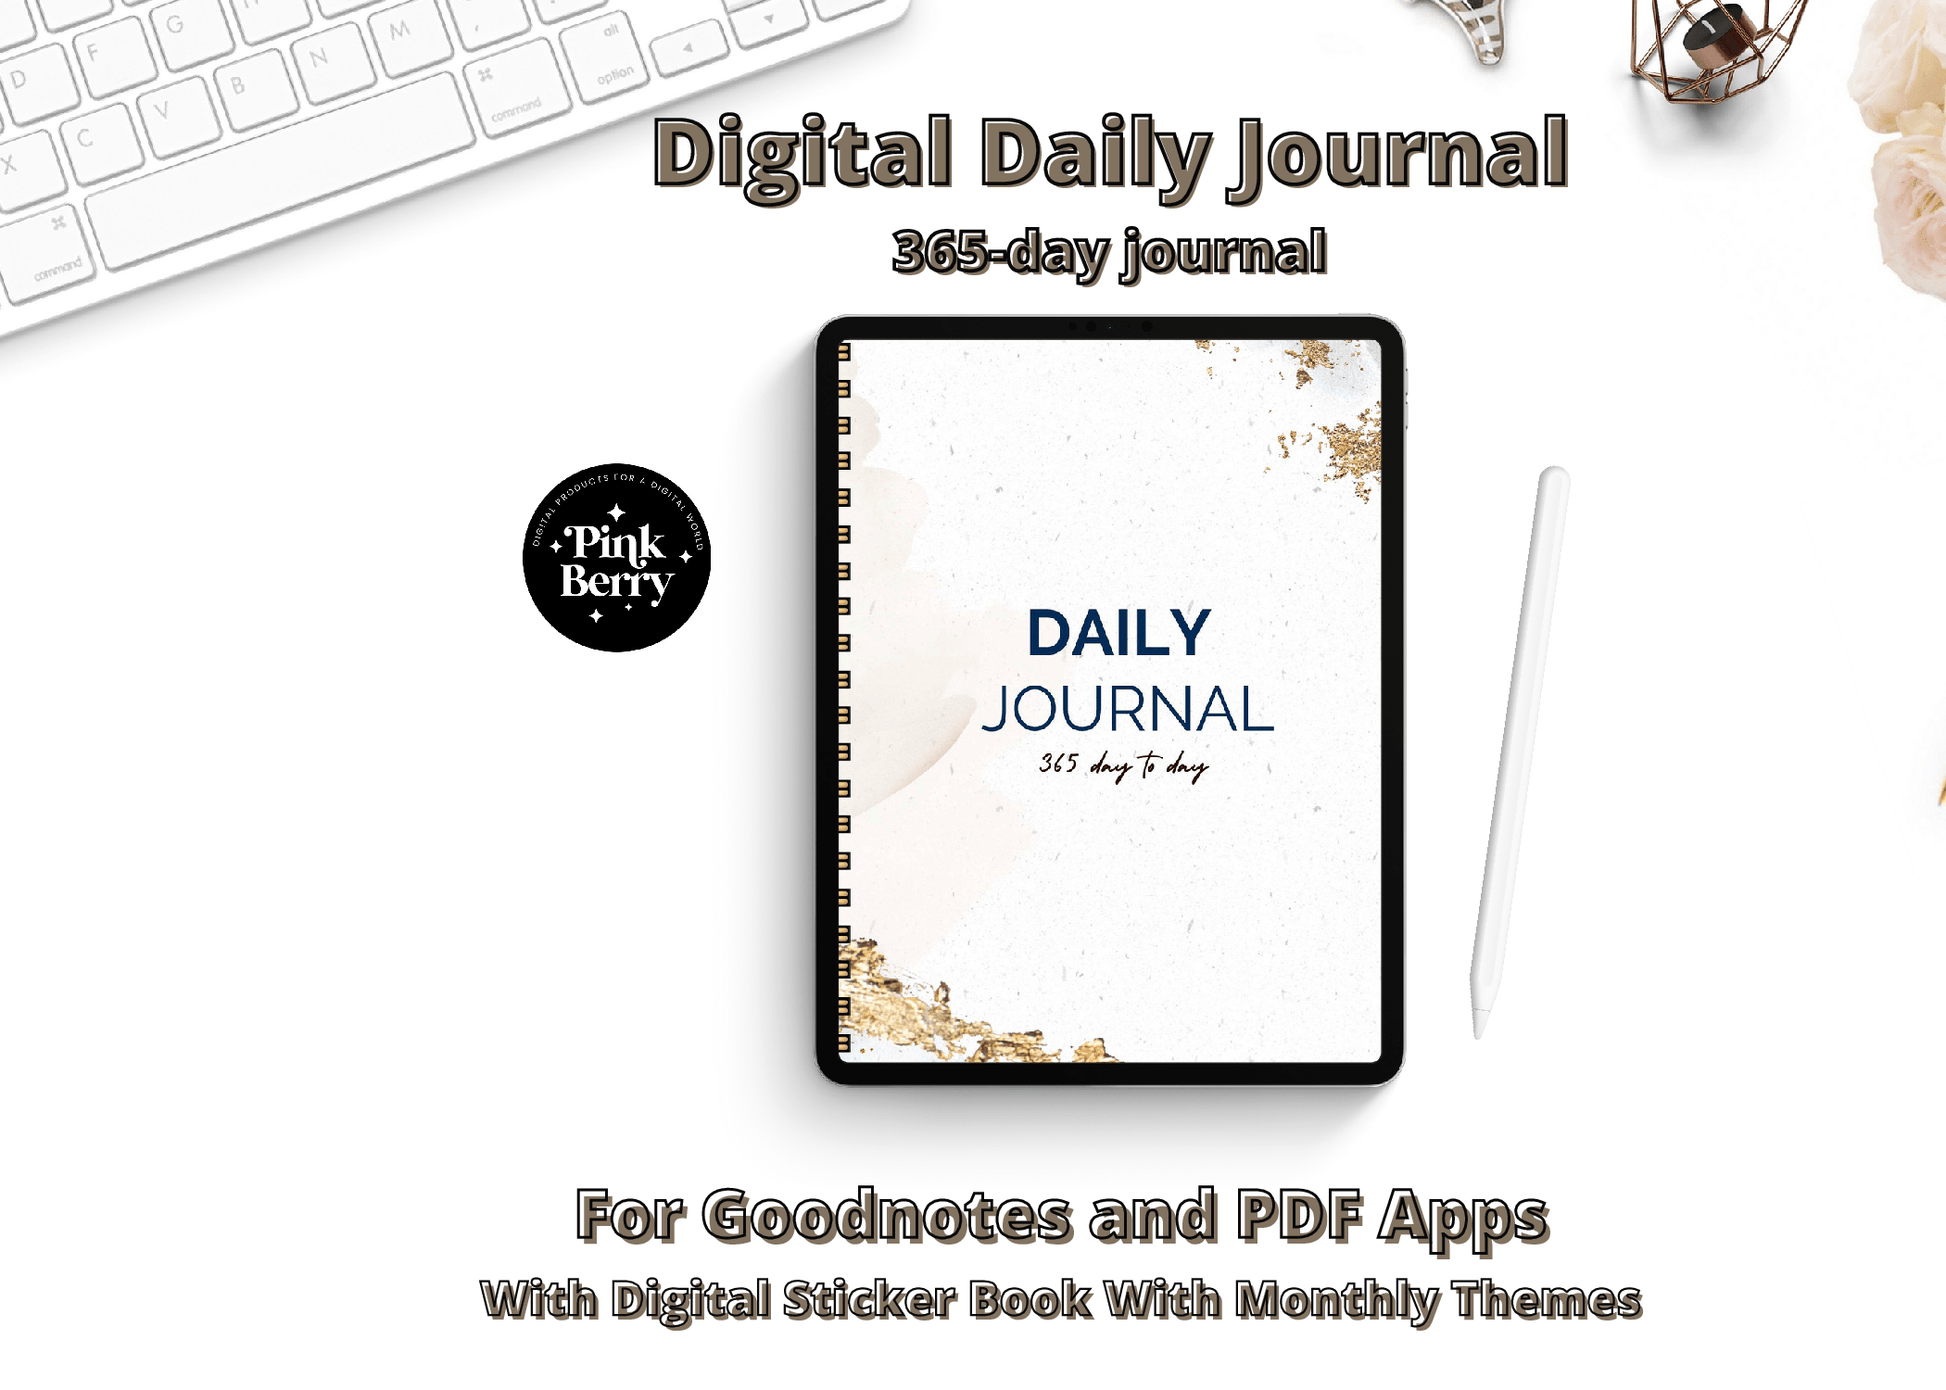 Wellness Digital Journal